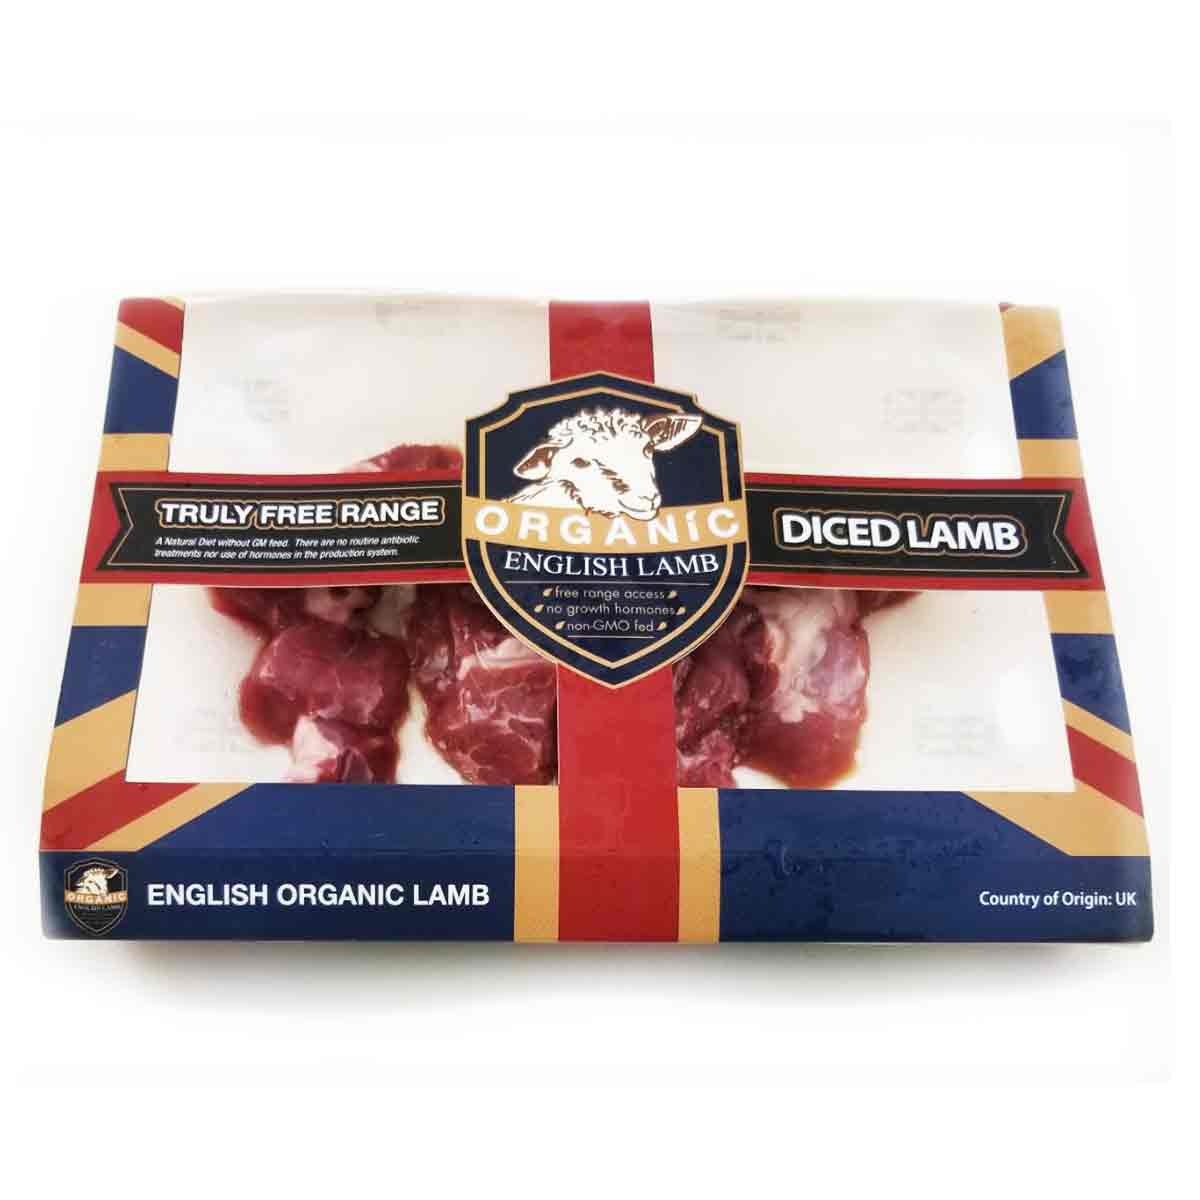 Frozen British Organic English Lamb Diced 200g*